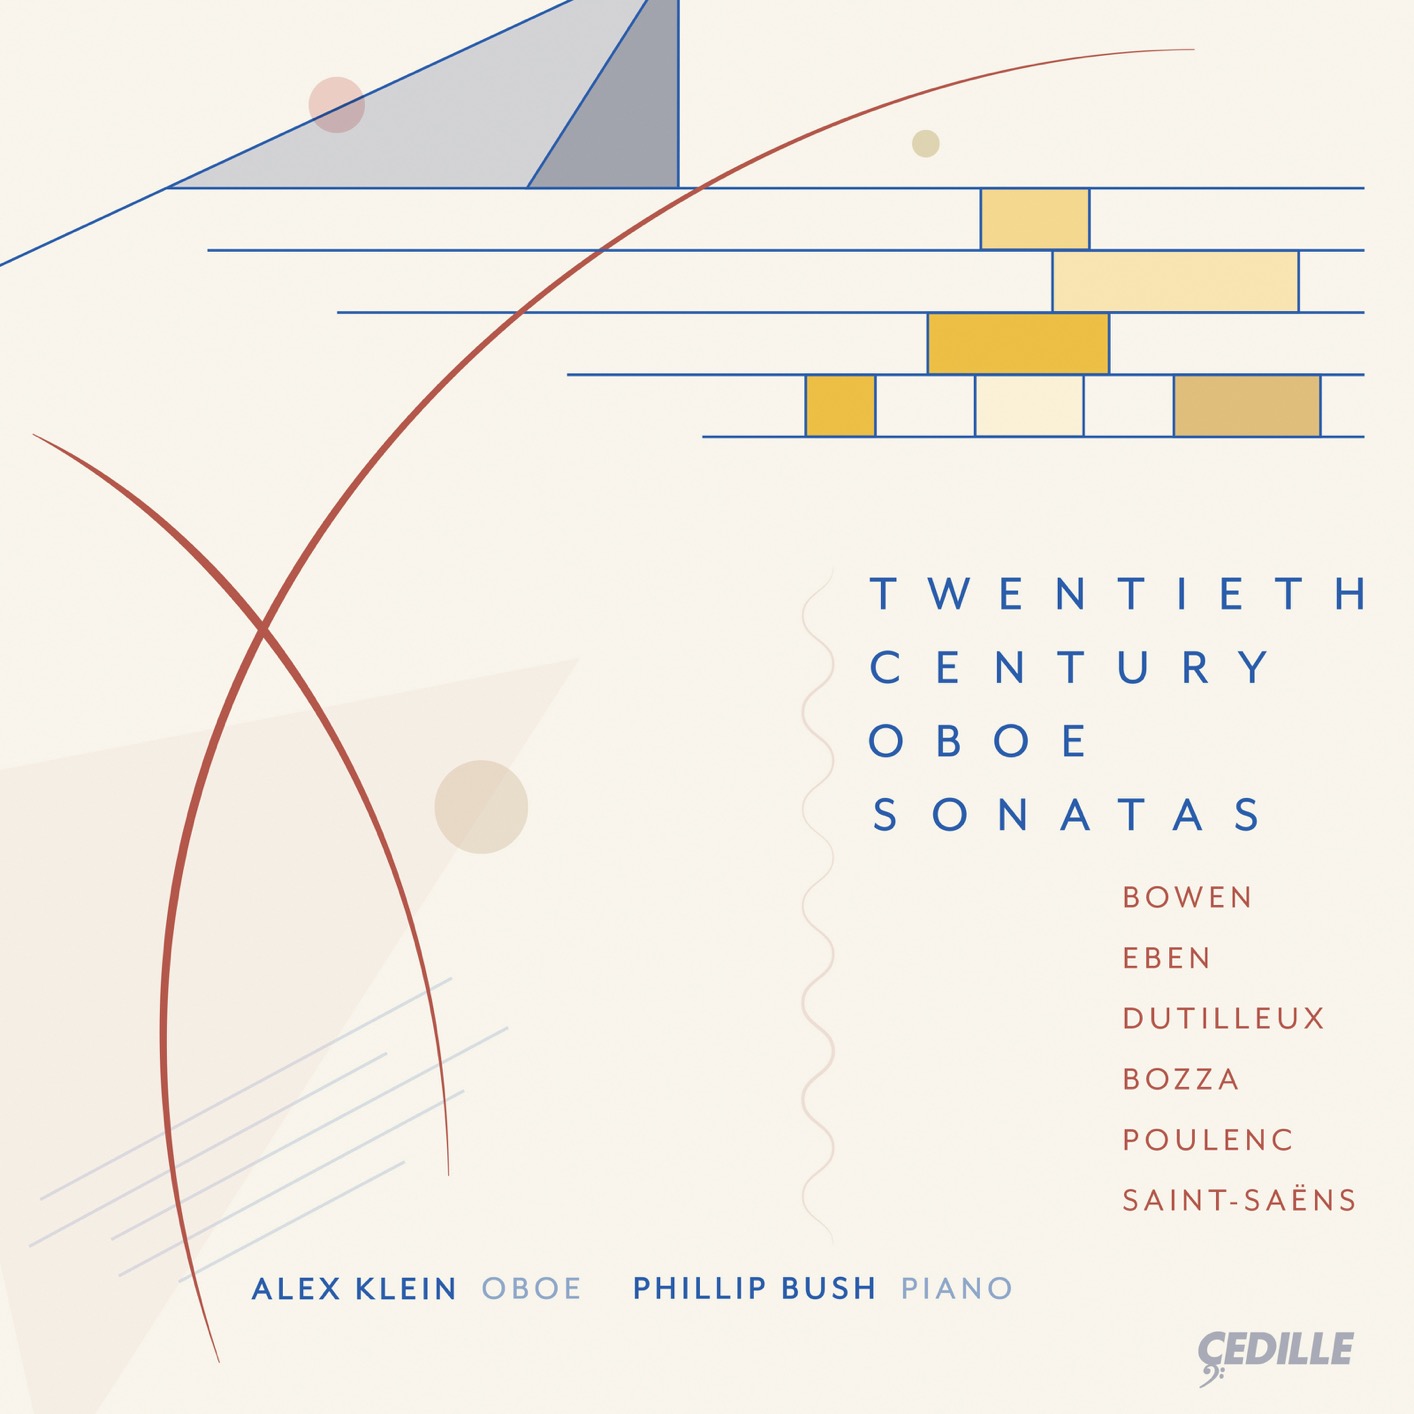 Alex Klein & Phillip Bush - Twentieth Century Oboe Sonatas (2019) [FLAC 24bit/96kHz]